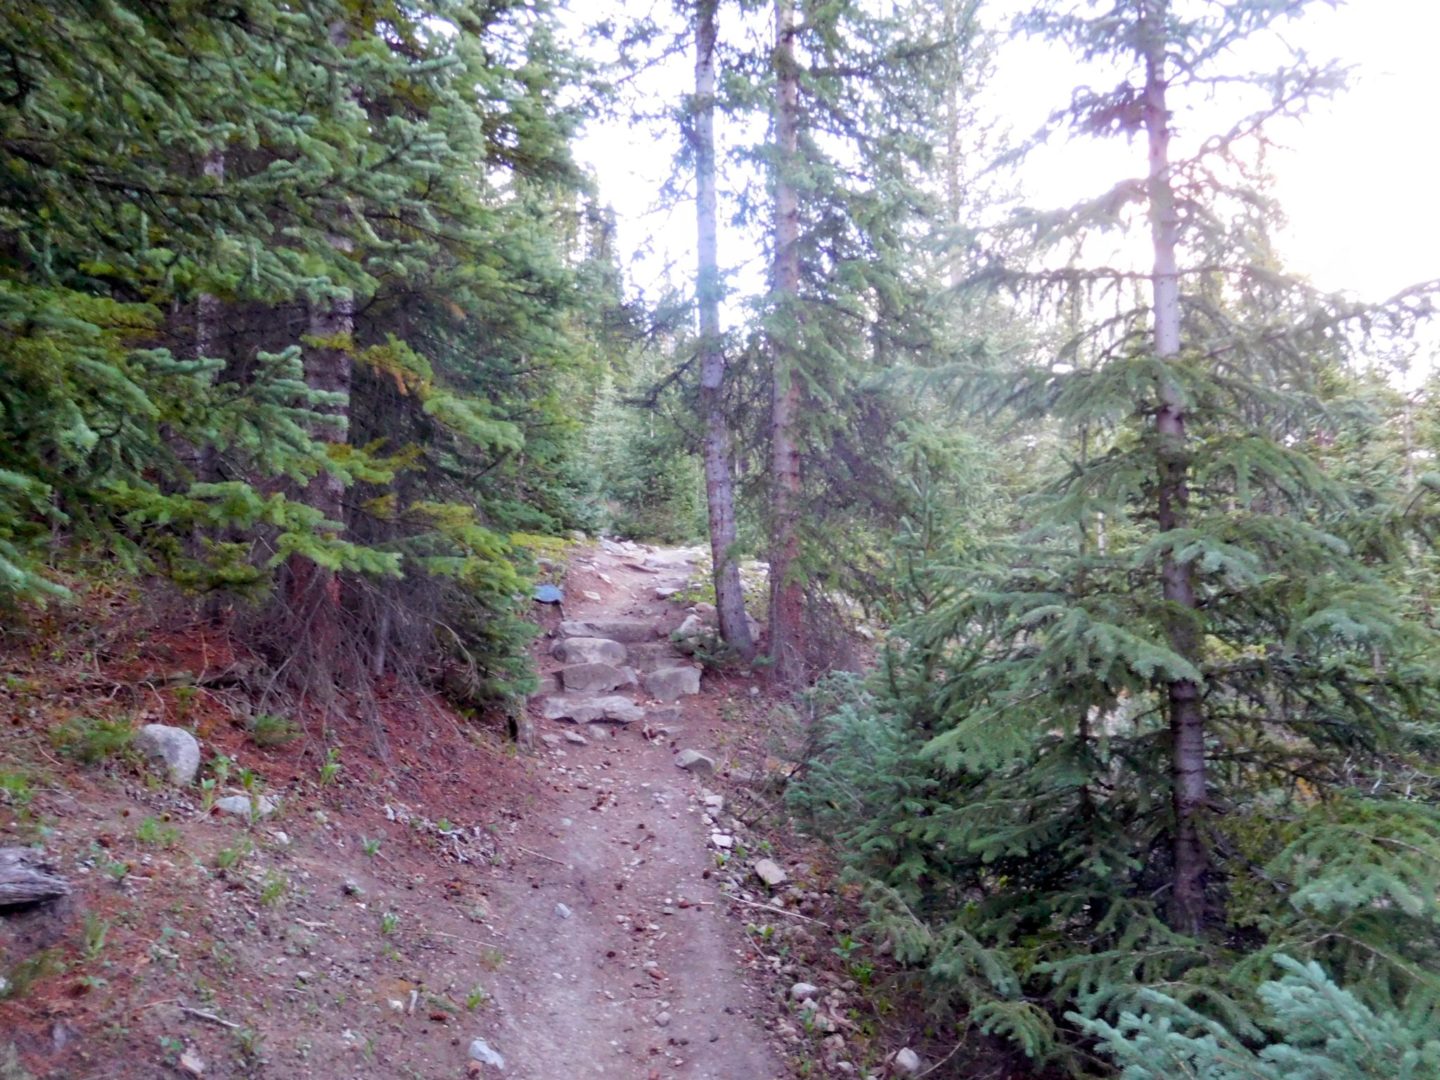 Good trail below treeline